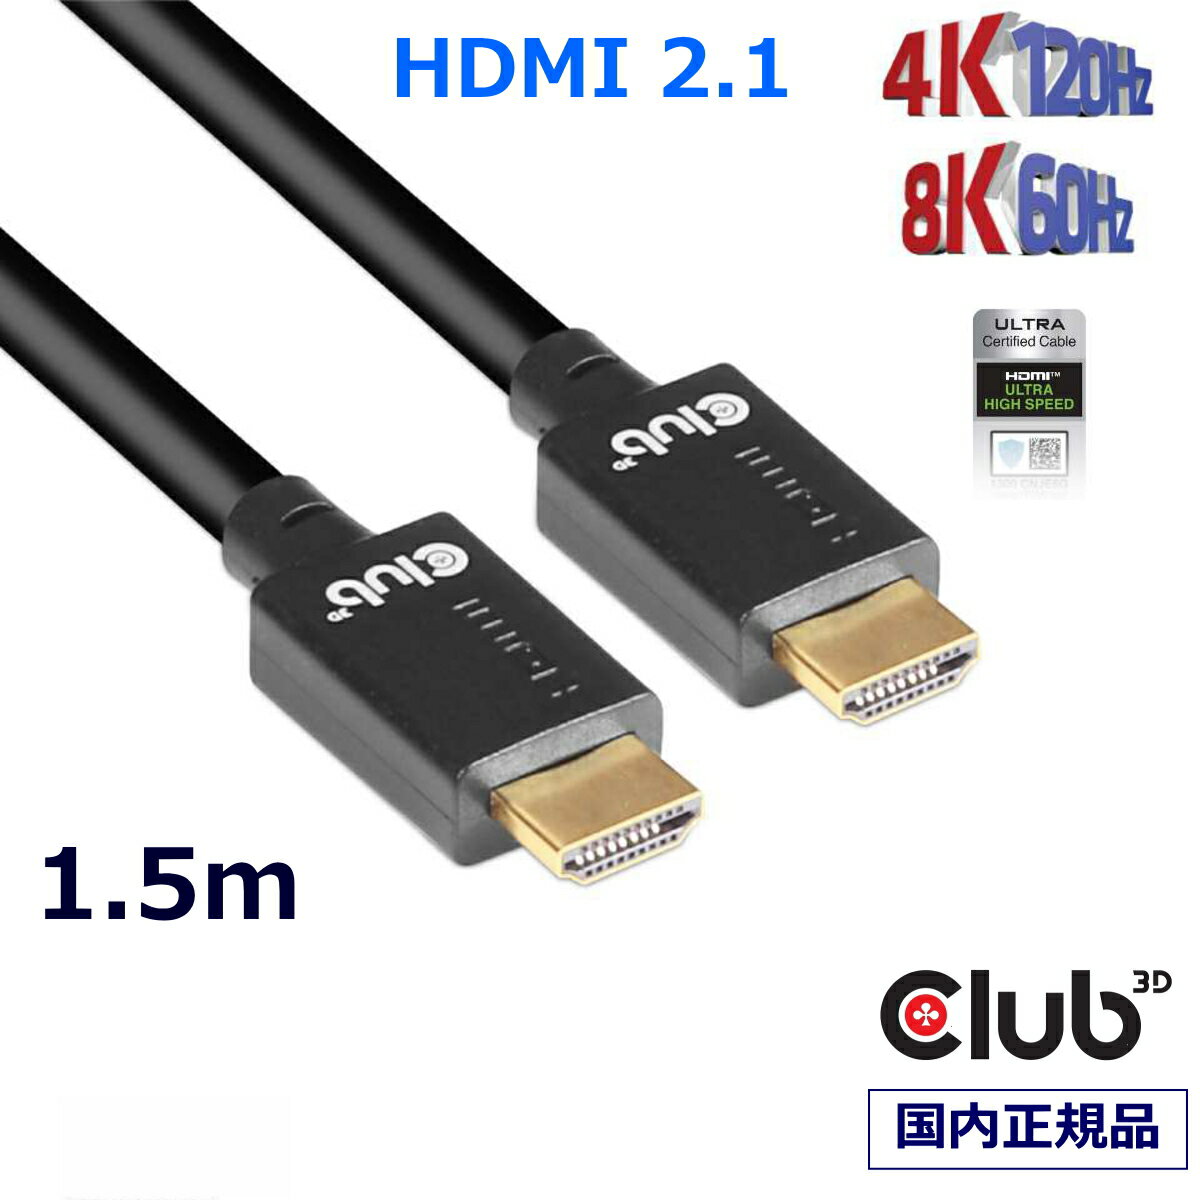 国内正規品 Club3D HDMI 2.1 4K120Hz 8K60Hz 48Gbps Male/Male 1.5m Ultra ウルトラ ハイスピード 認証ケーブル (CAC-1370)